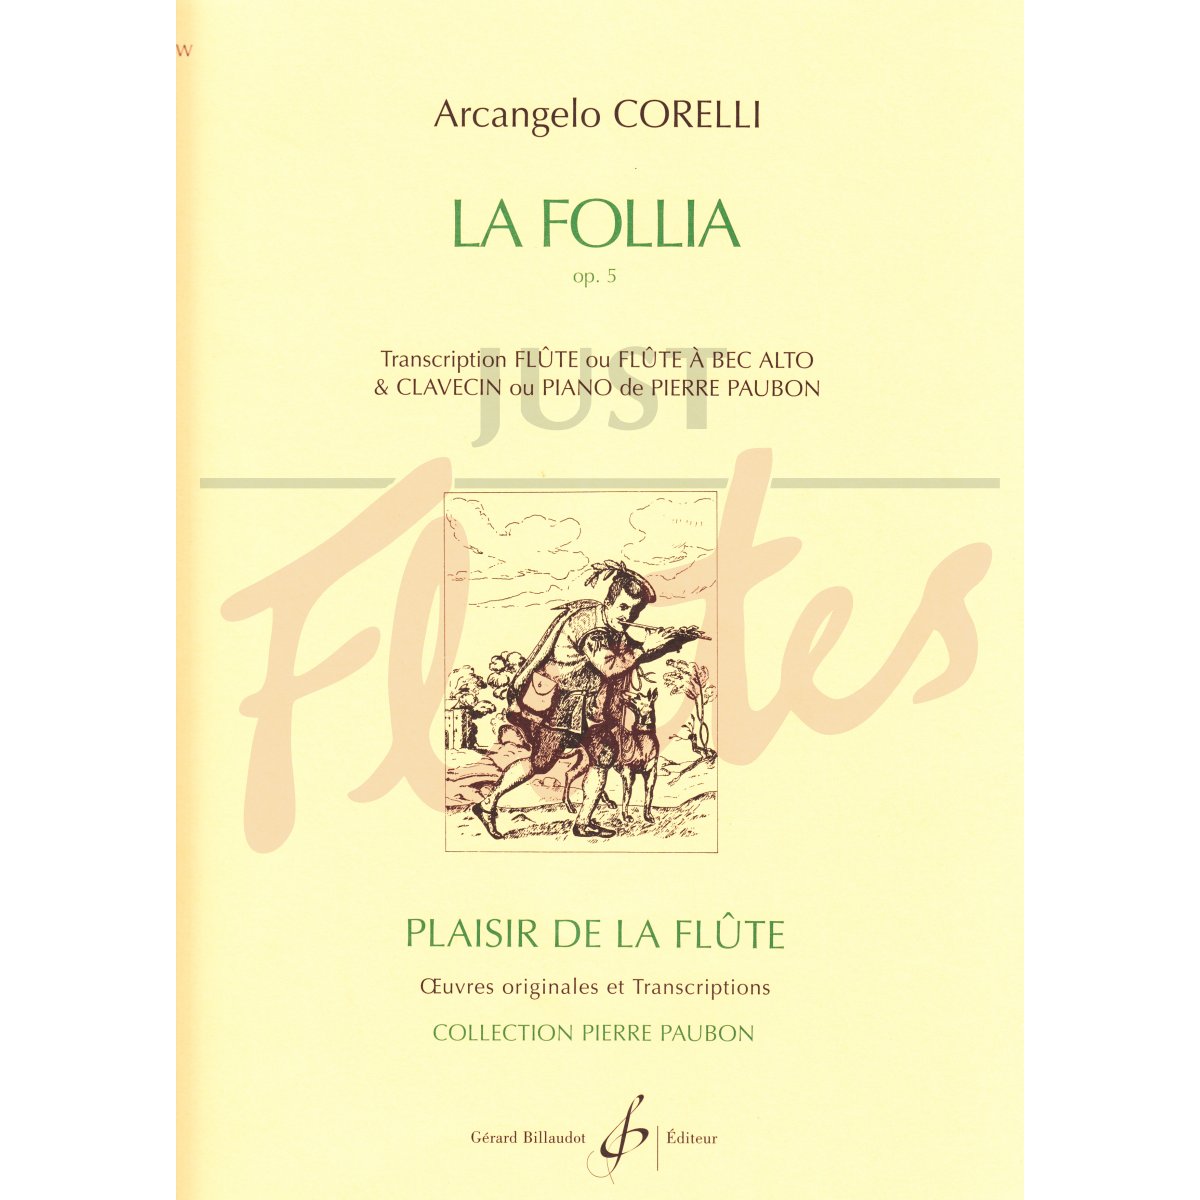 La Follia transcribed for Flute and Piano